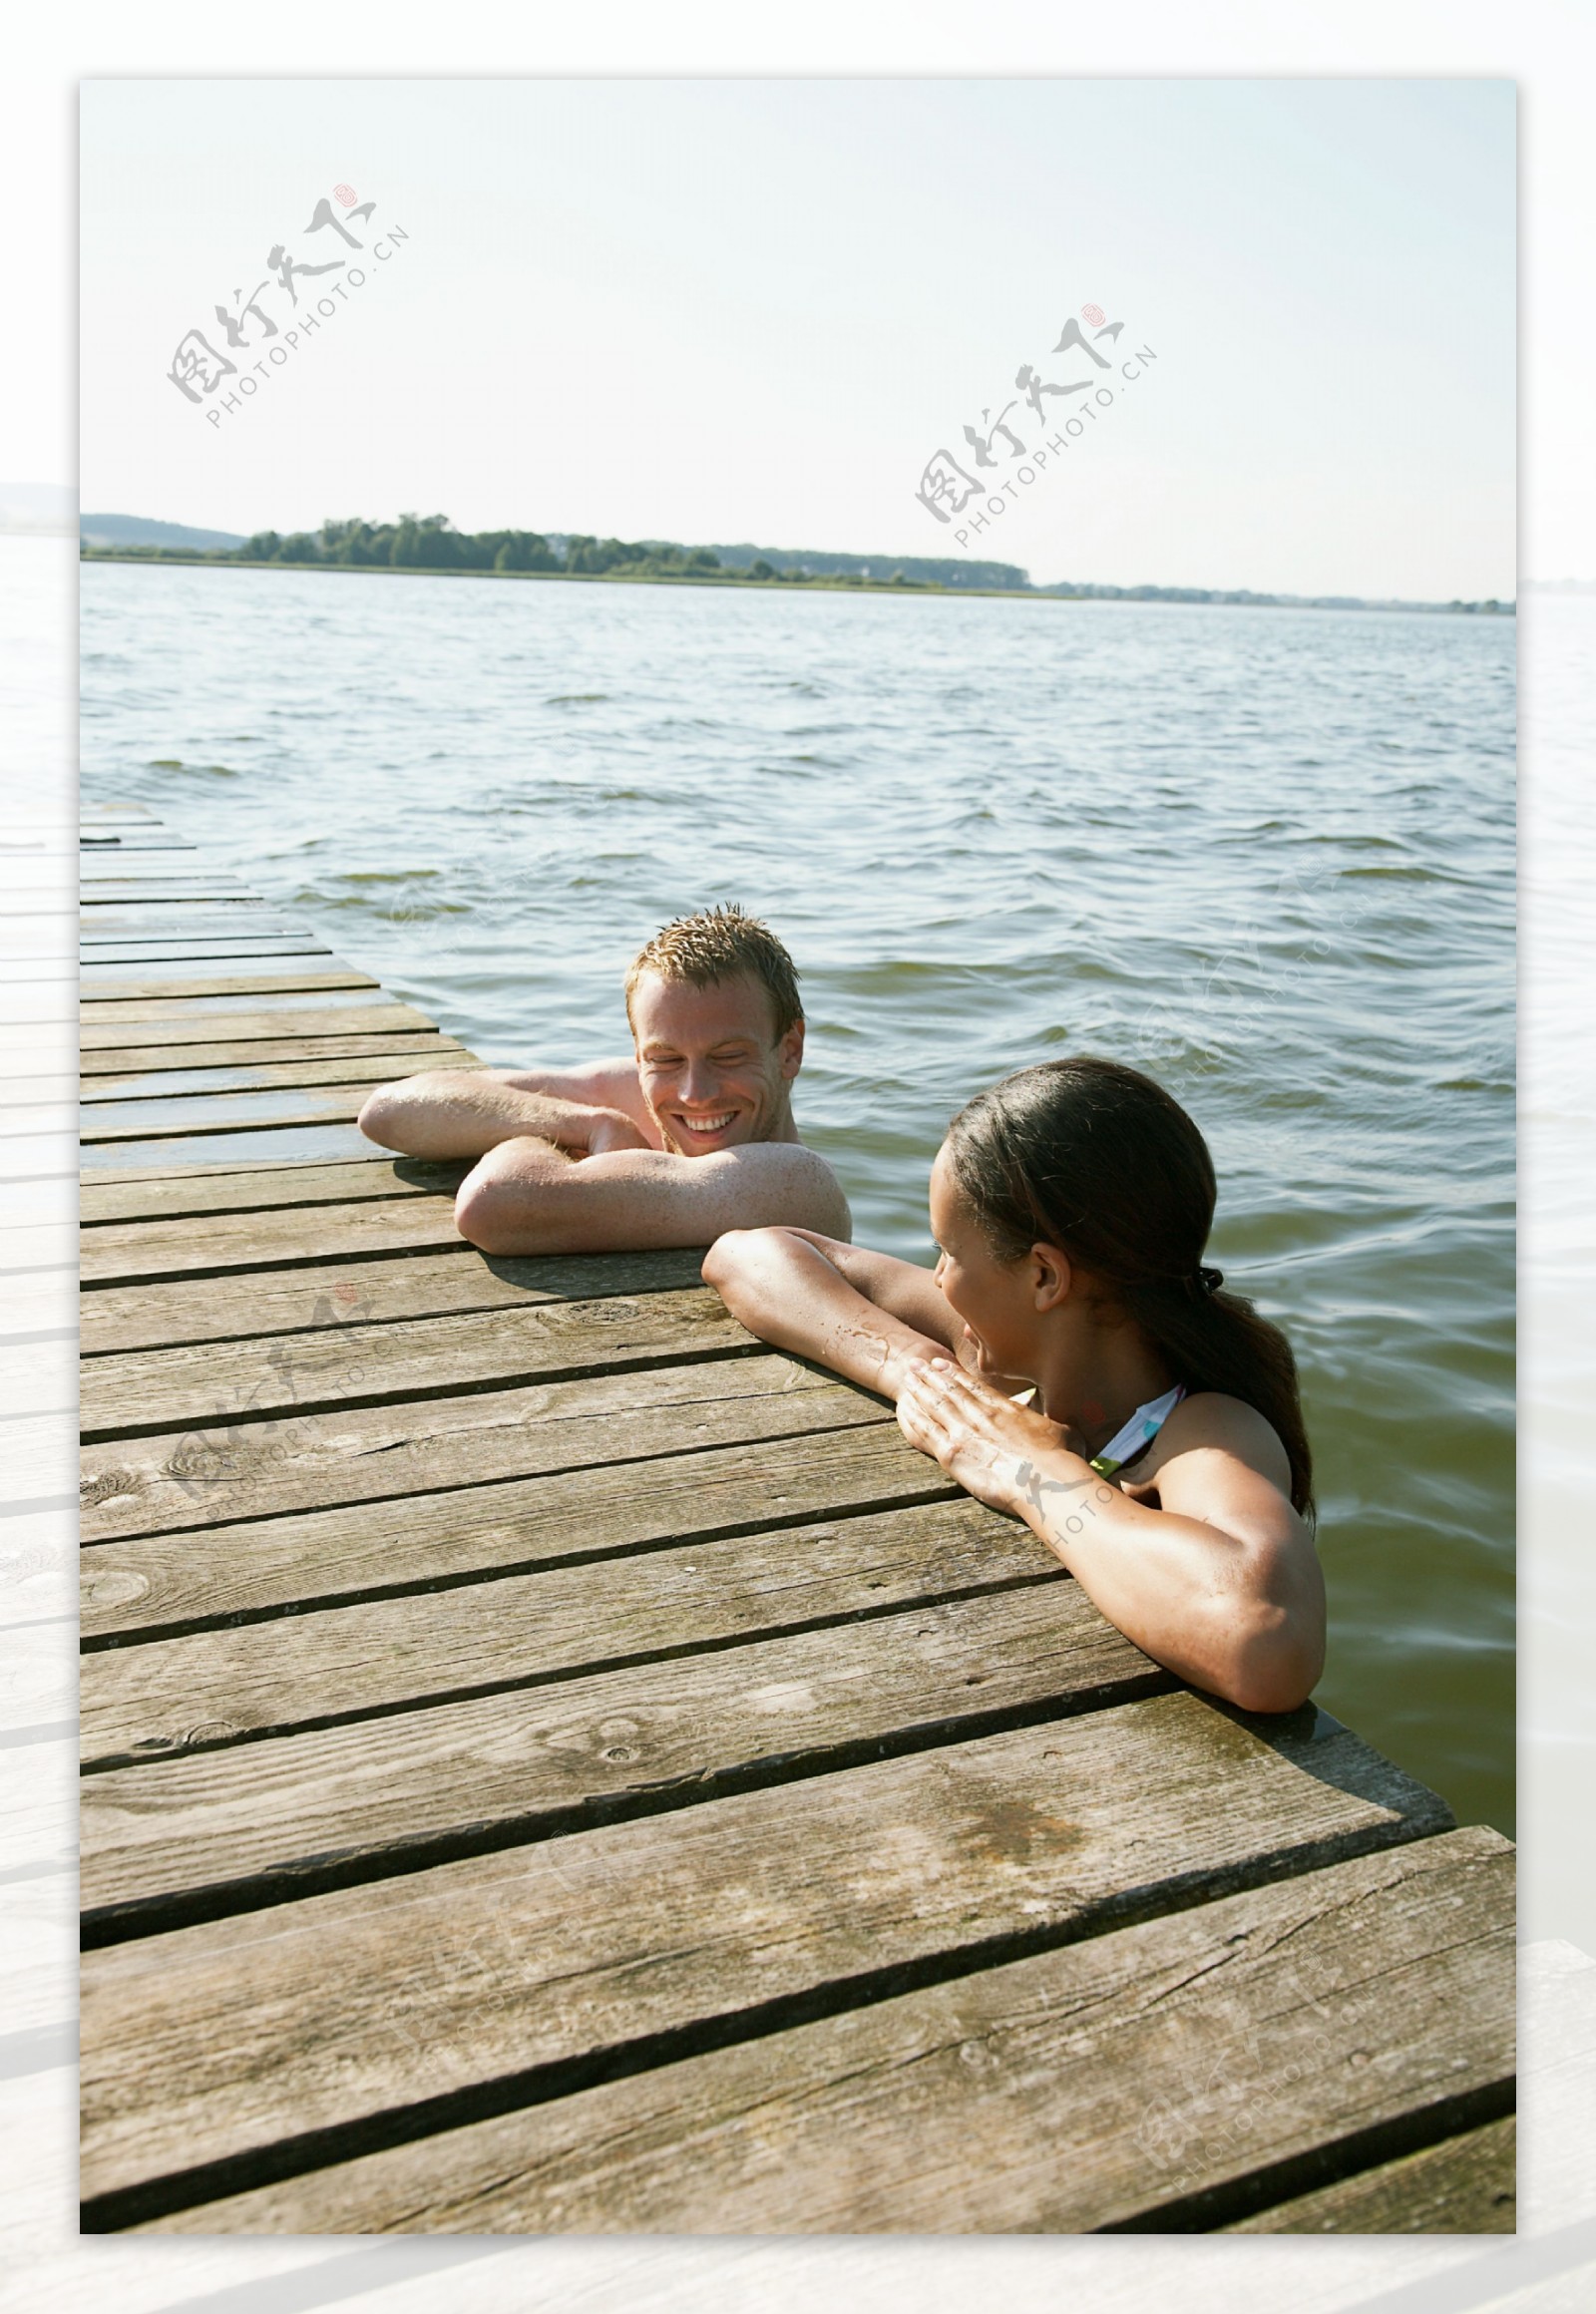 趴在木板上的水中情侣图片